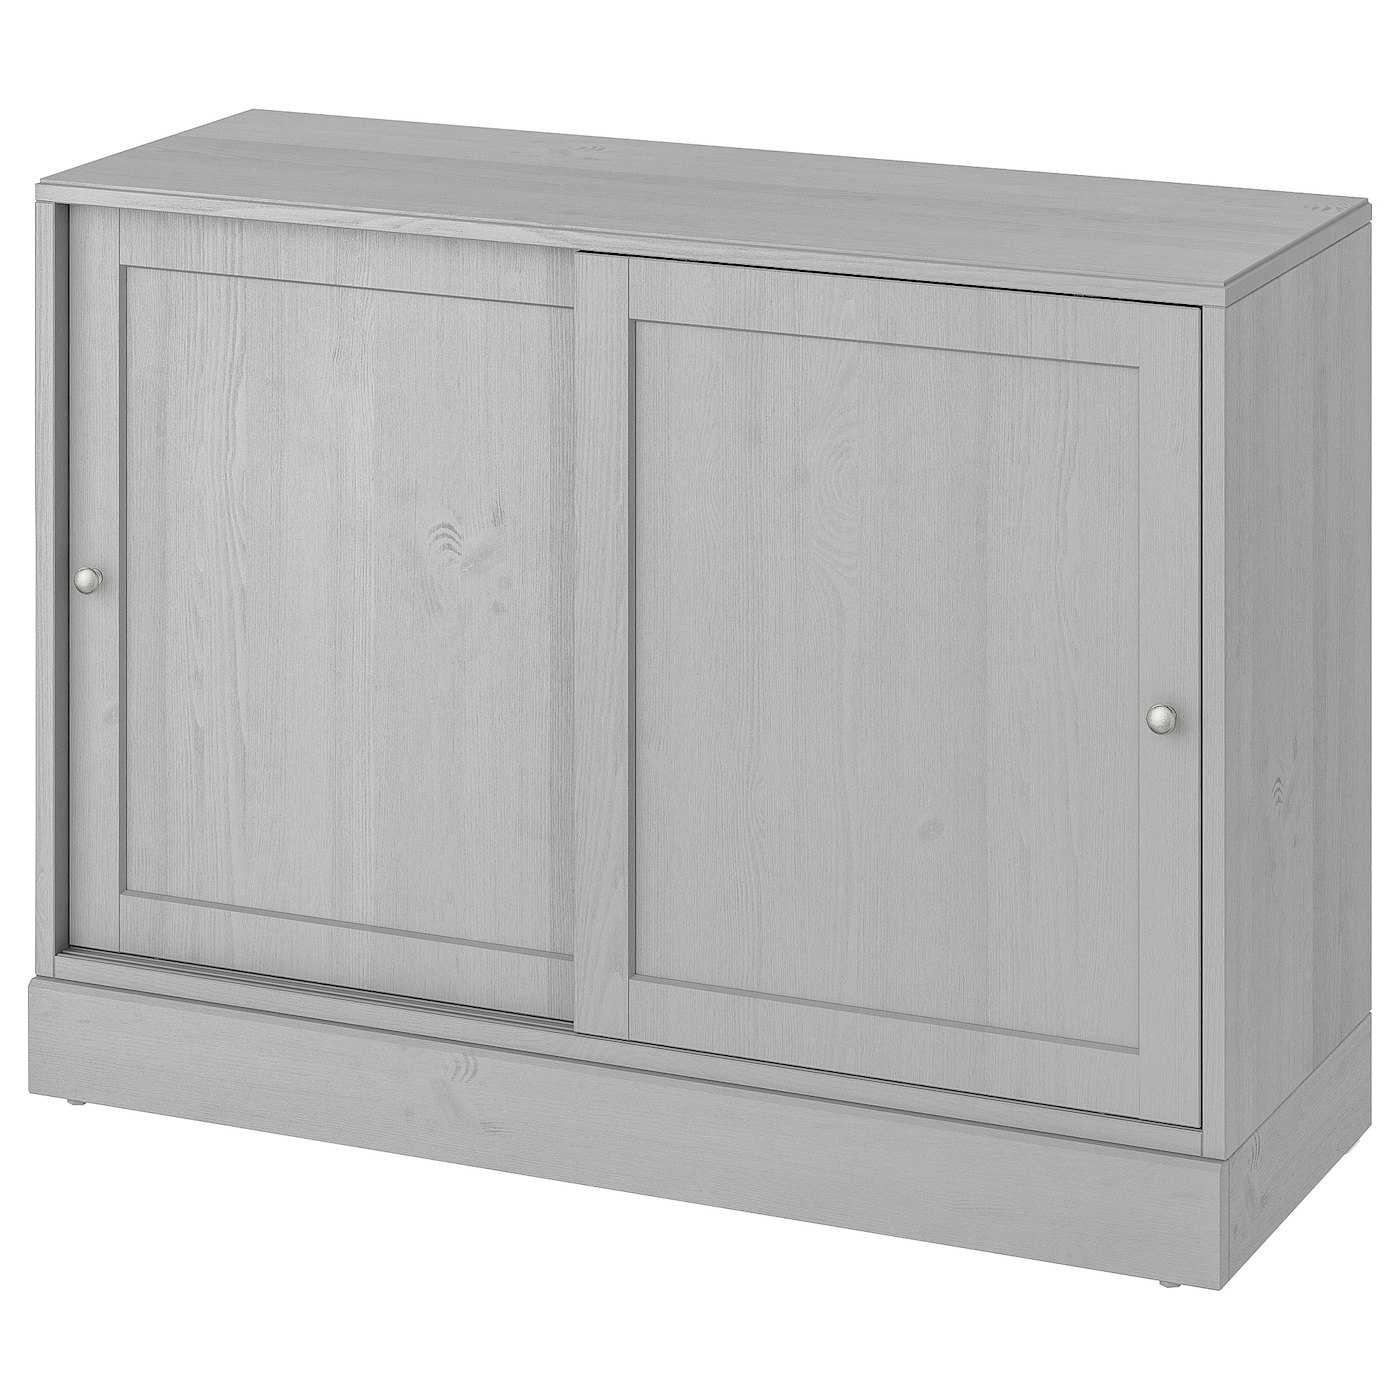 Шкаф с цоколем - IKEA HAVSTA, 121x89x47 см, серый ХАВСТА ИКЕА